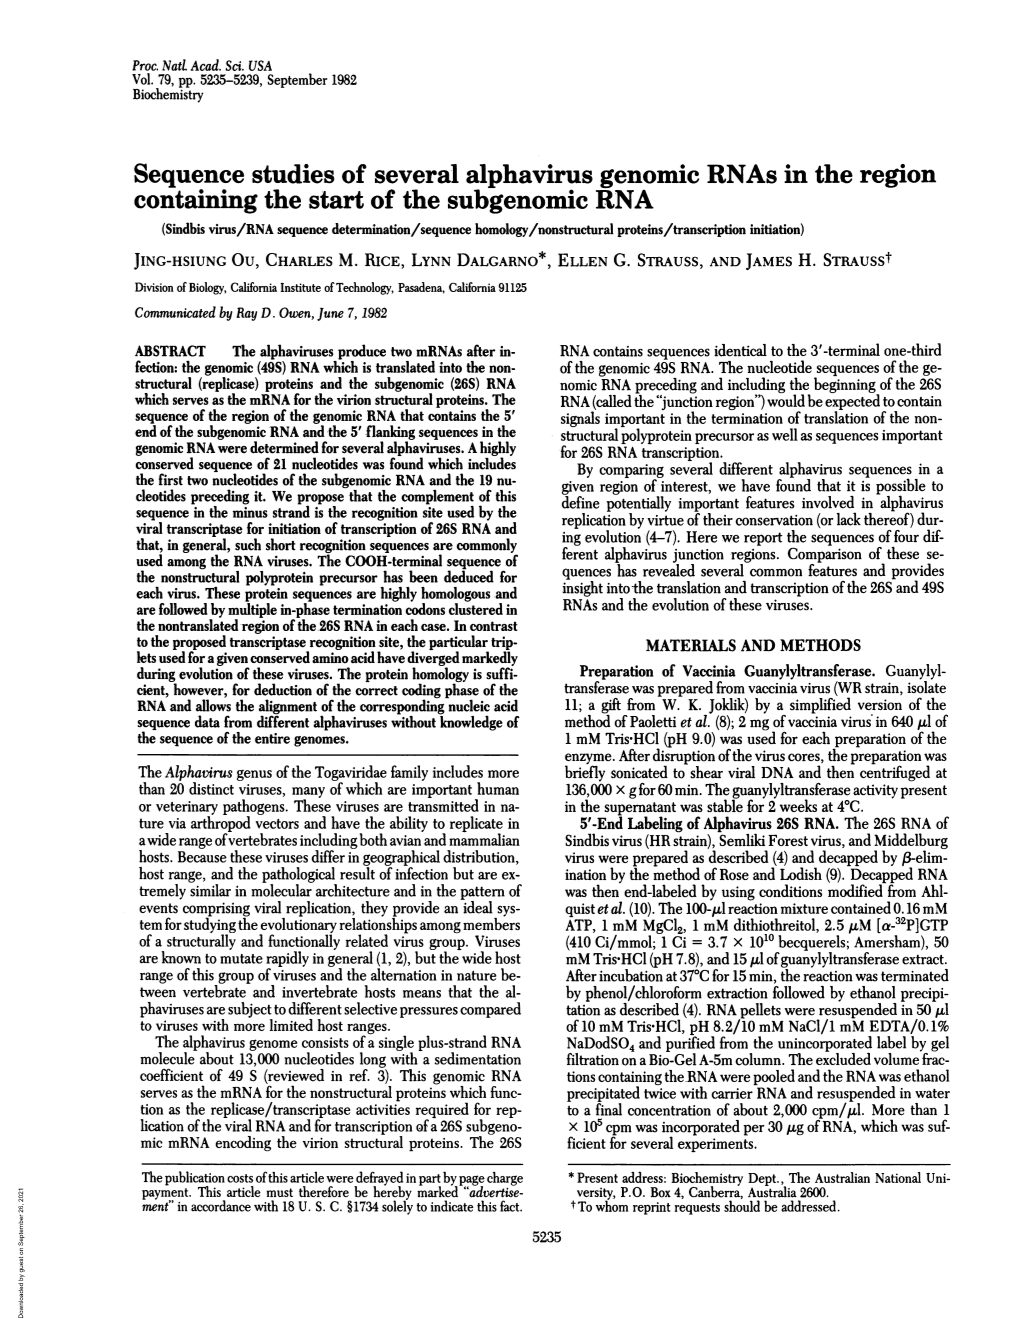 Sequence Studies of Several Alphavirusgenomic Rnas in The